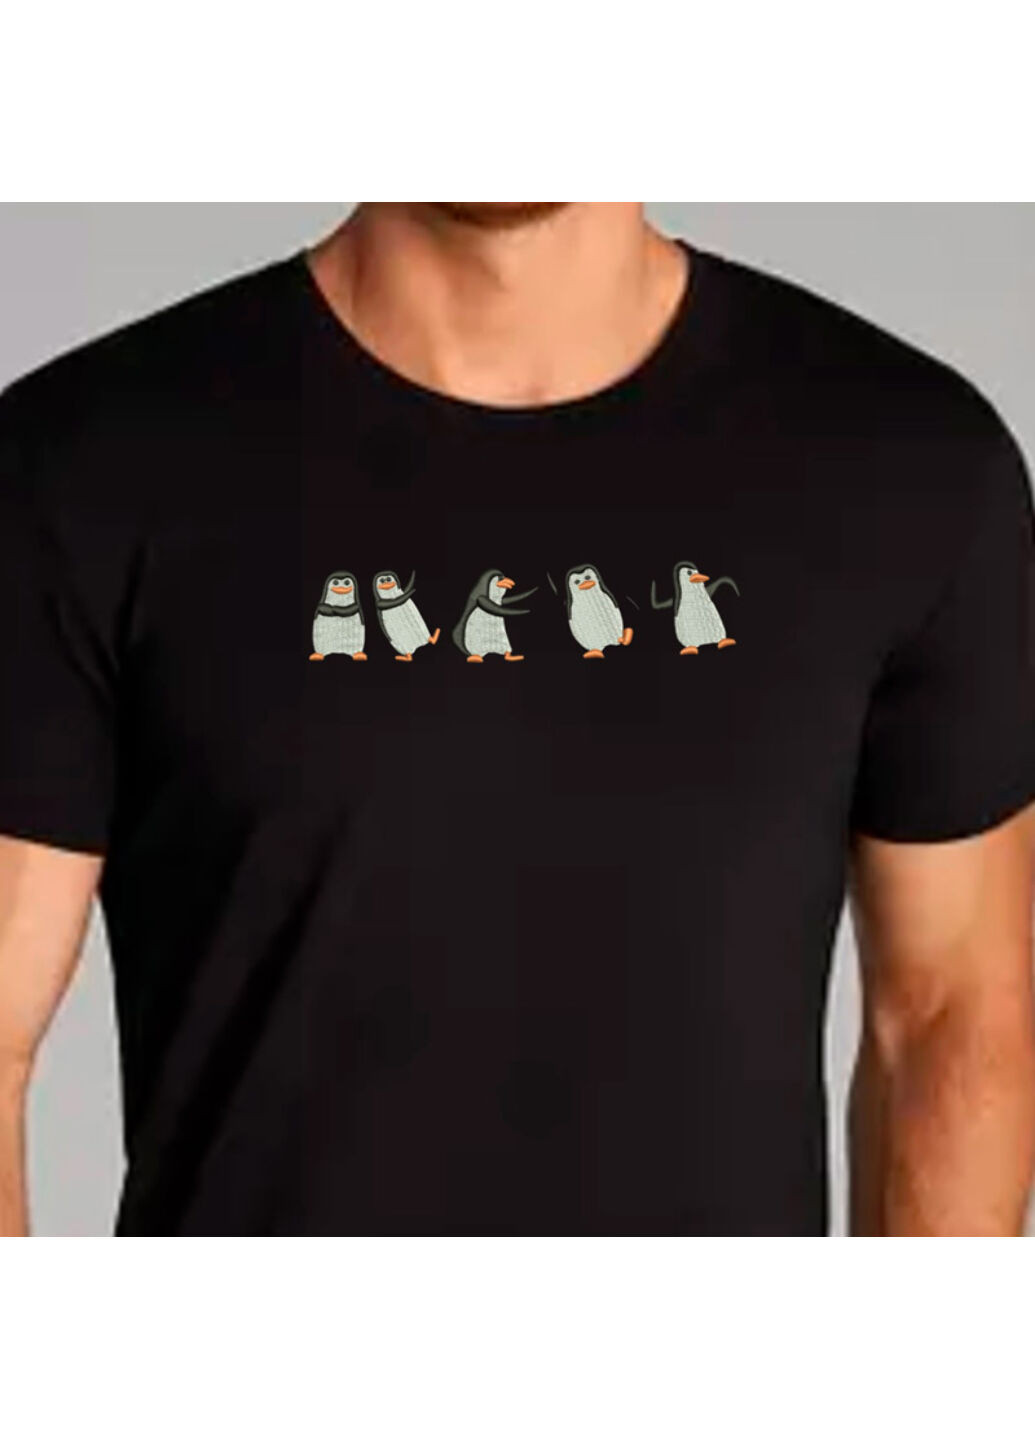 Черная футболка с вышивкой пингвинов 01-2 мужская черный m No Brand